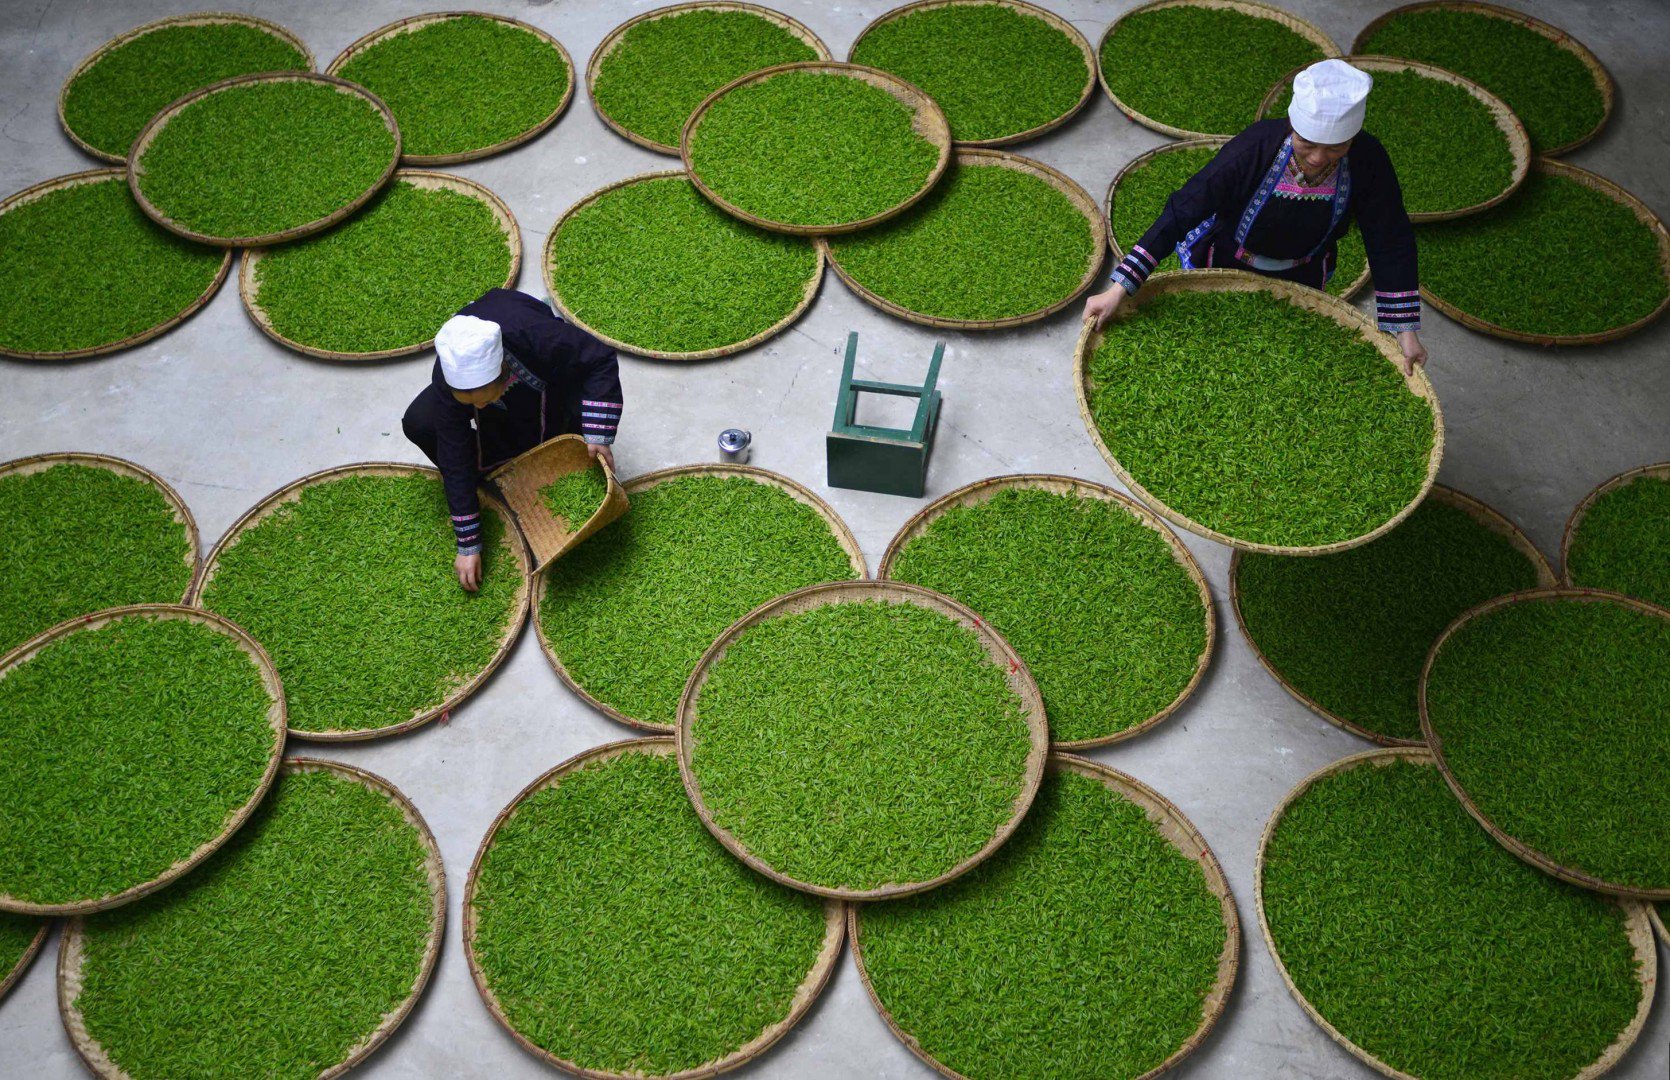 Nữ công nhân người dân tộc Dong kiểm tra lá chè tại một nhà máy sản xuất chè ở huyện Lê Bình (tỉnh Quý Châu). Theo thống kê của truyền thông địa phương, trong năm 2014, ngành chè đã tạo công việc cho hơn 60.000 công nhân nữ đến từ các làng lân cận. Thu nhập mỗi người đạt khoảng 100 nhân dân tệ một ngày. Ảnh: Reuters